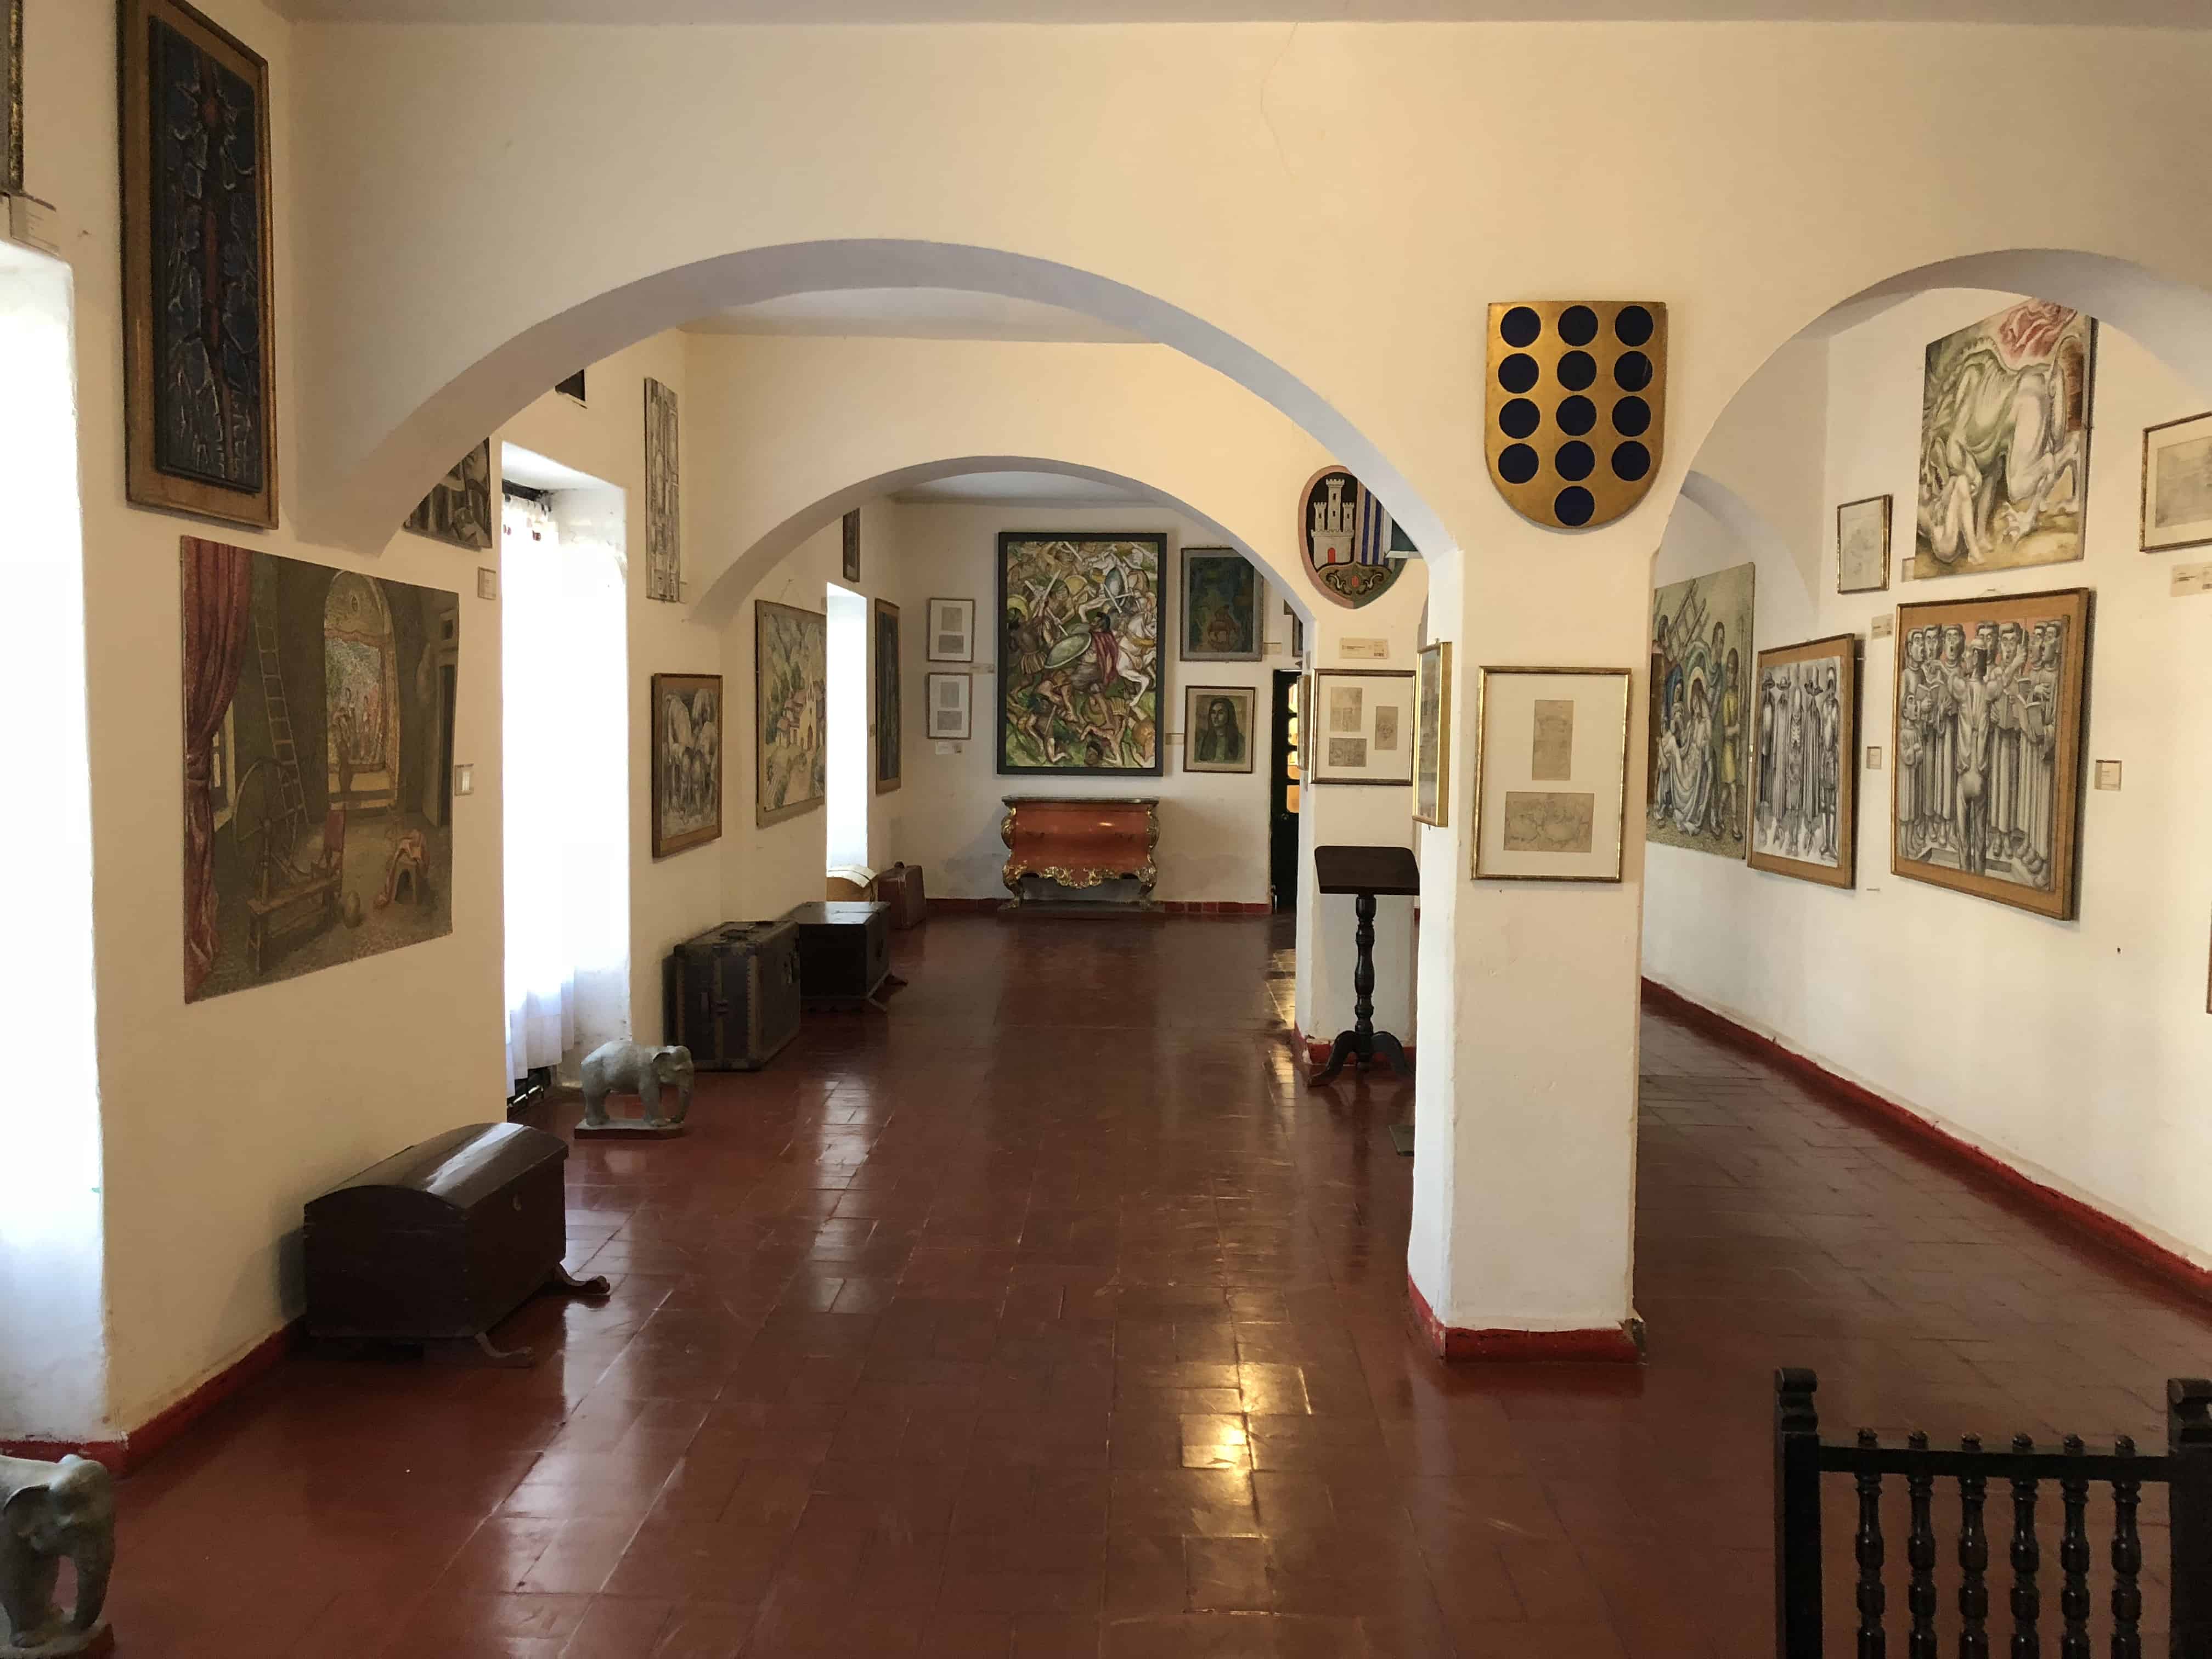 Main gallery at Casa Museo Luis Alberto Acuña in Villa de Leyva, Boyacá, Colombia